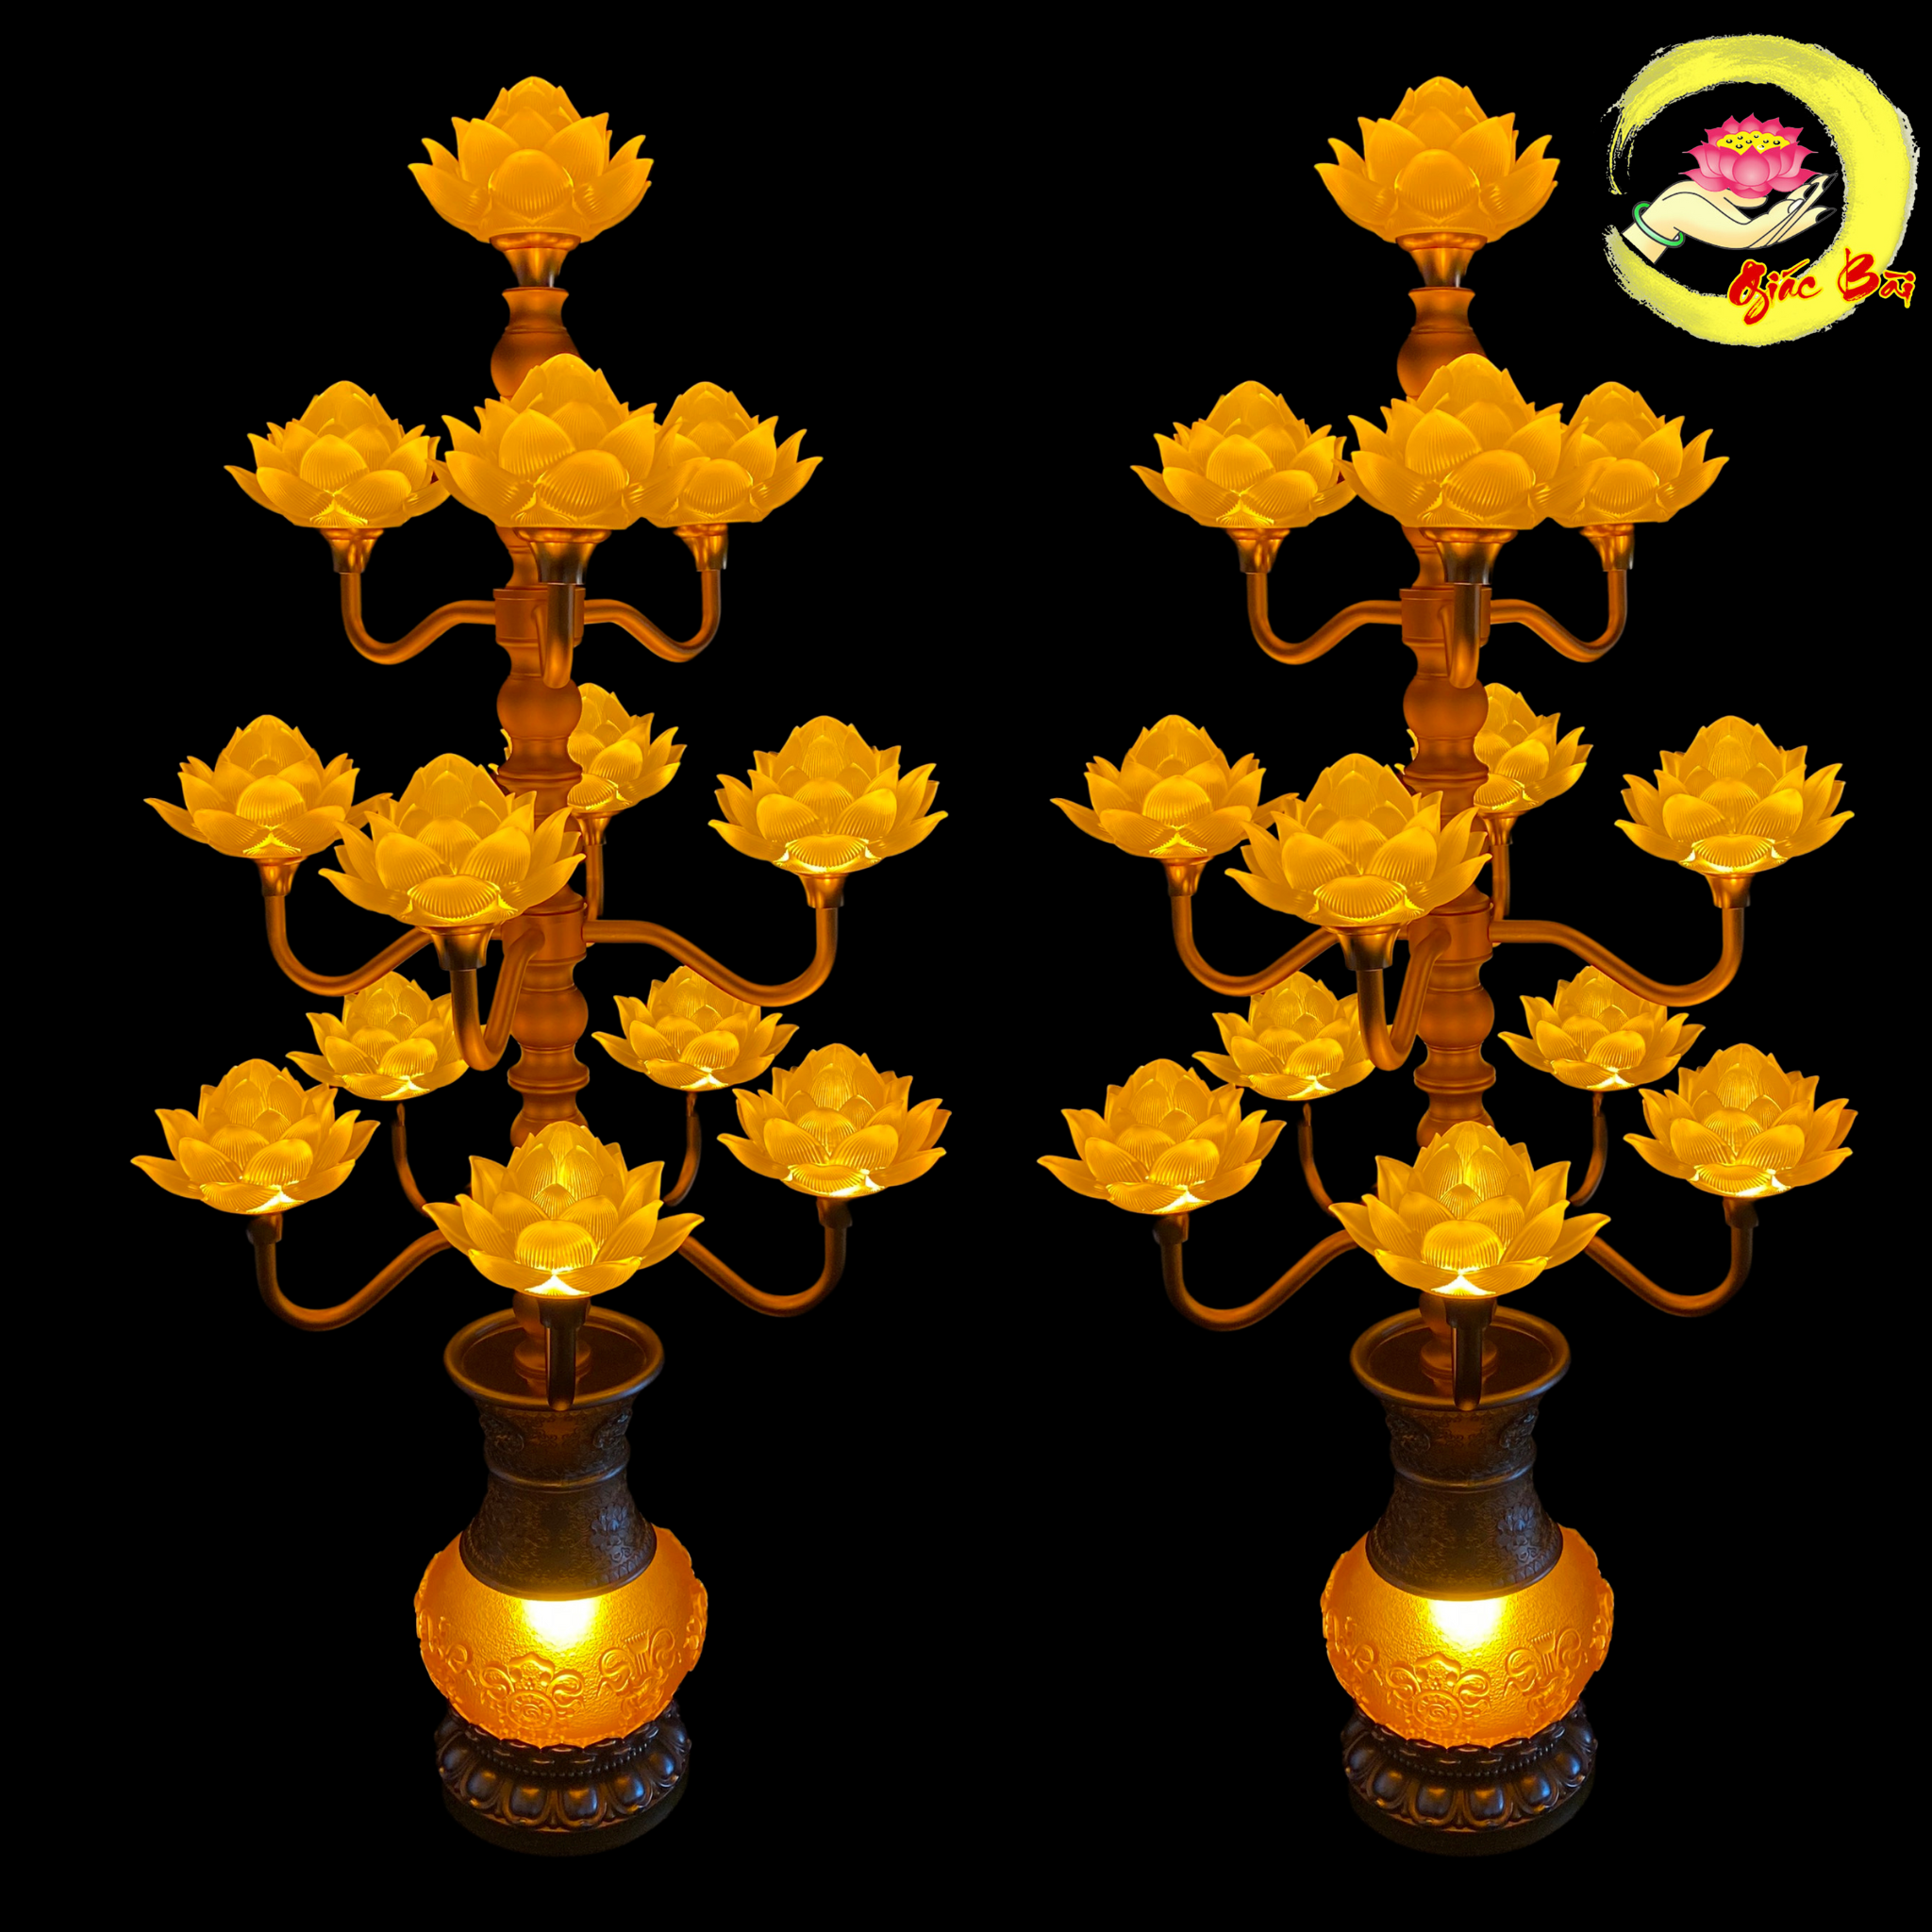 Đèn hoa sen bình lưu ly 13 bông cao 123 cm